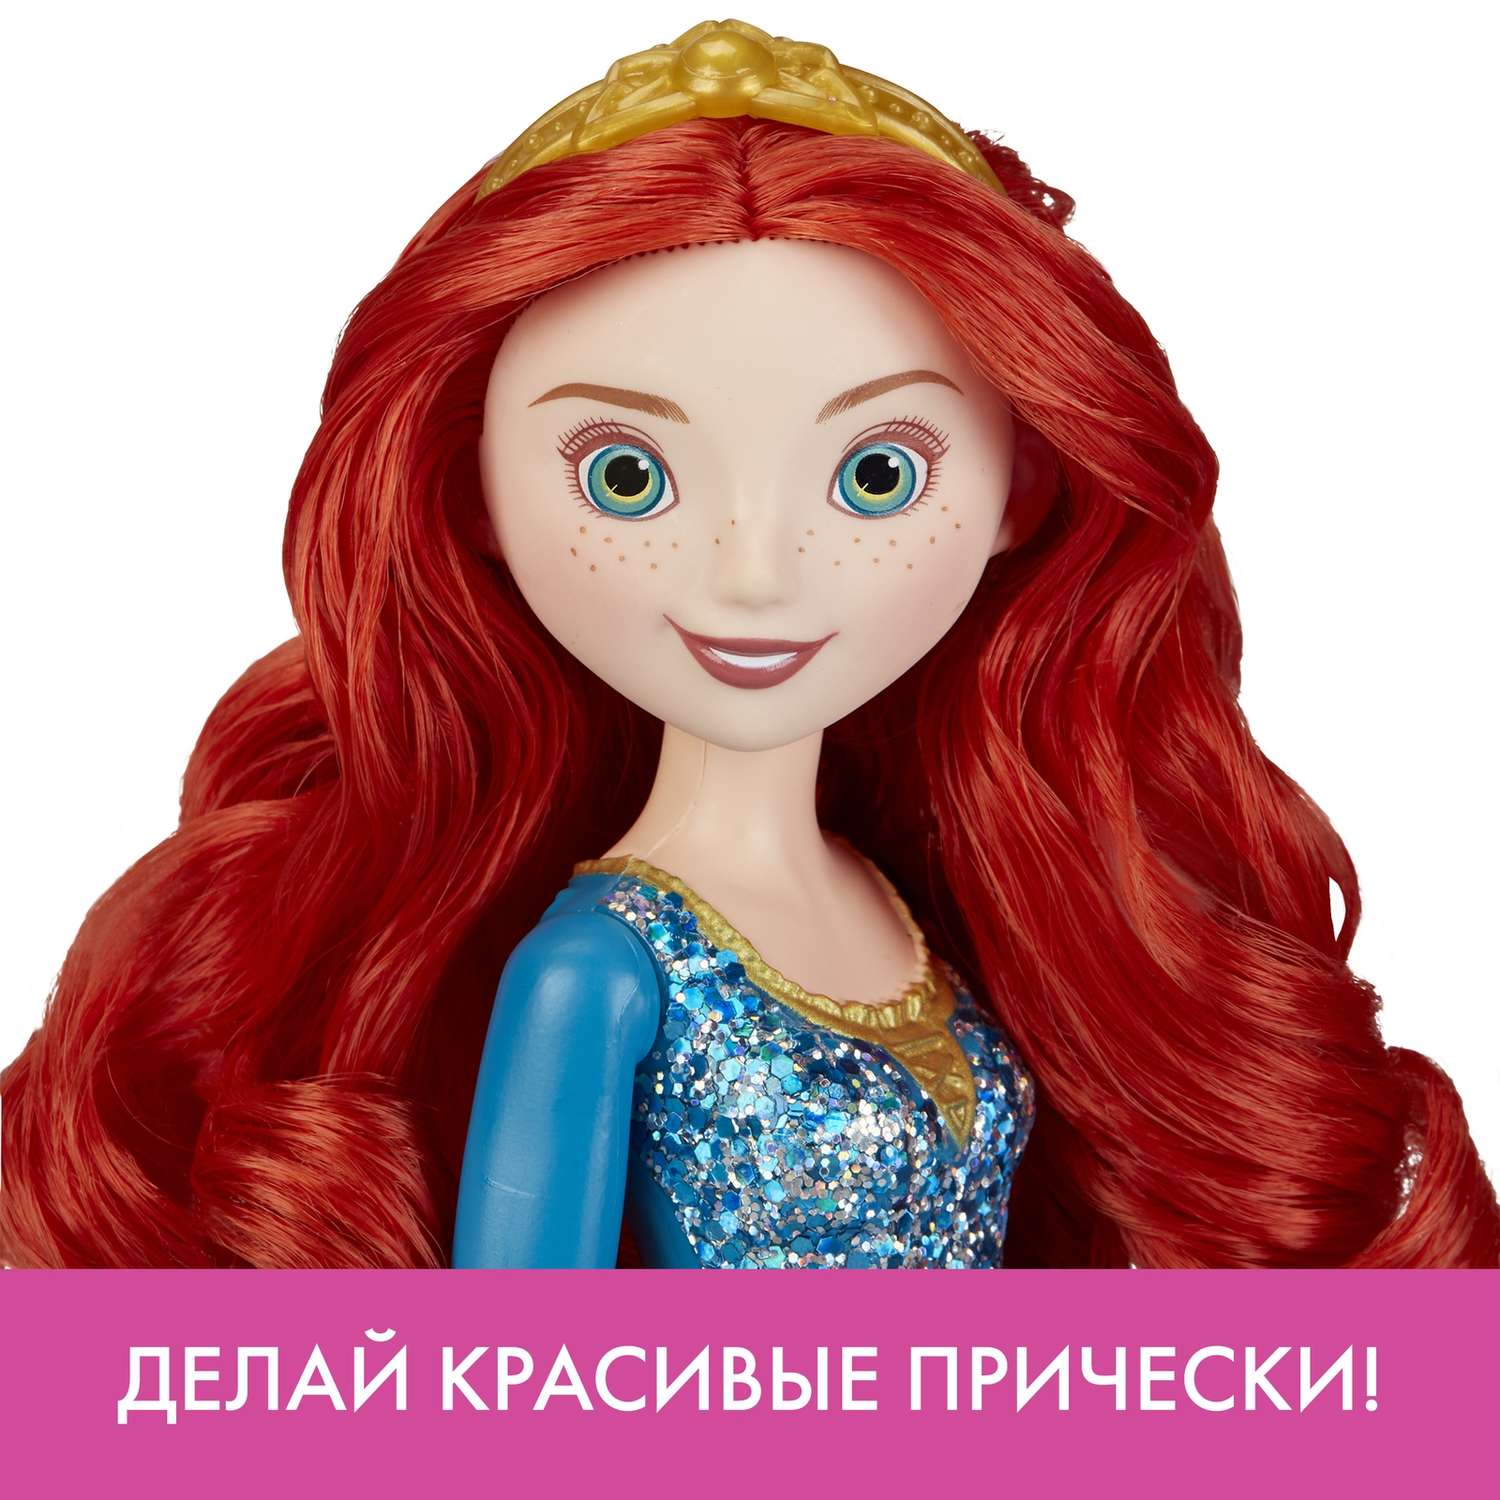 Кукла Disney Princess Hasbro C Мерида E4164EU4 E4022EU4 - фото 13